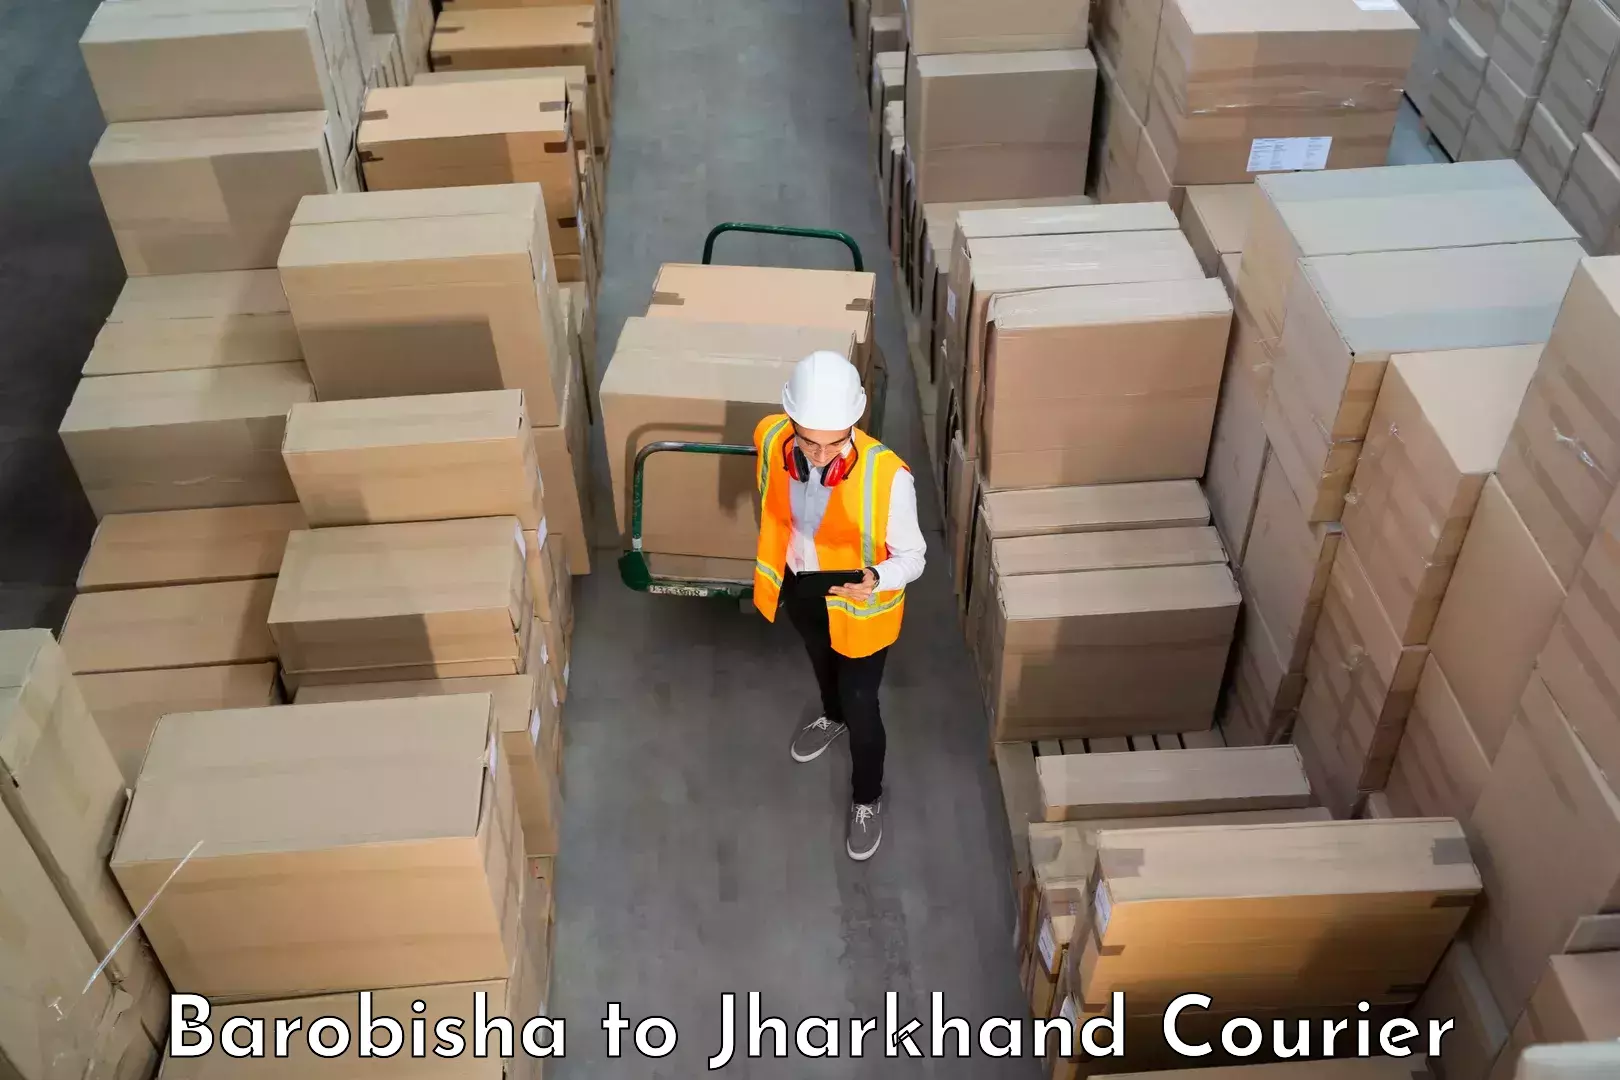 Furniture delivery service Barobisha to IIT Dhanbad